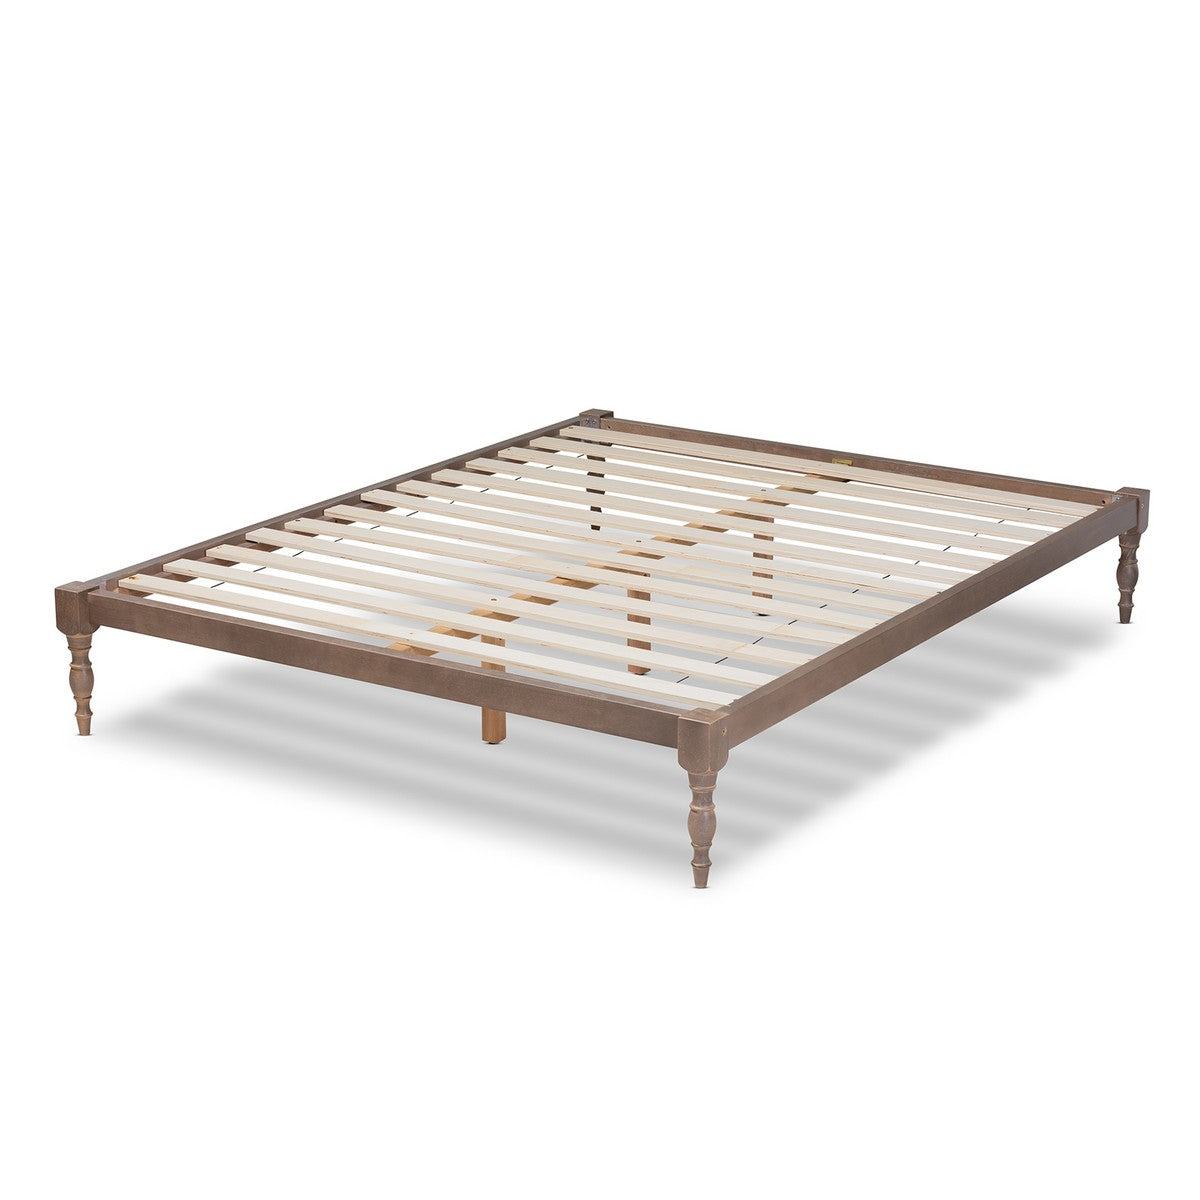 Baxton Studio Iseline Modern and Contemporary Antique Oak Finished Wood King Size Platform Bed Frame